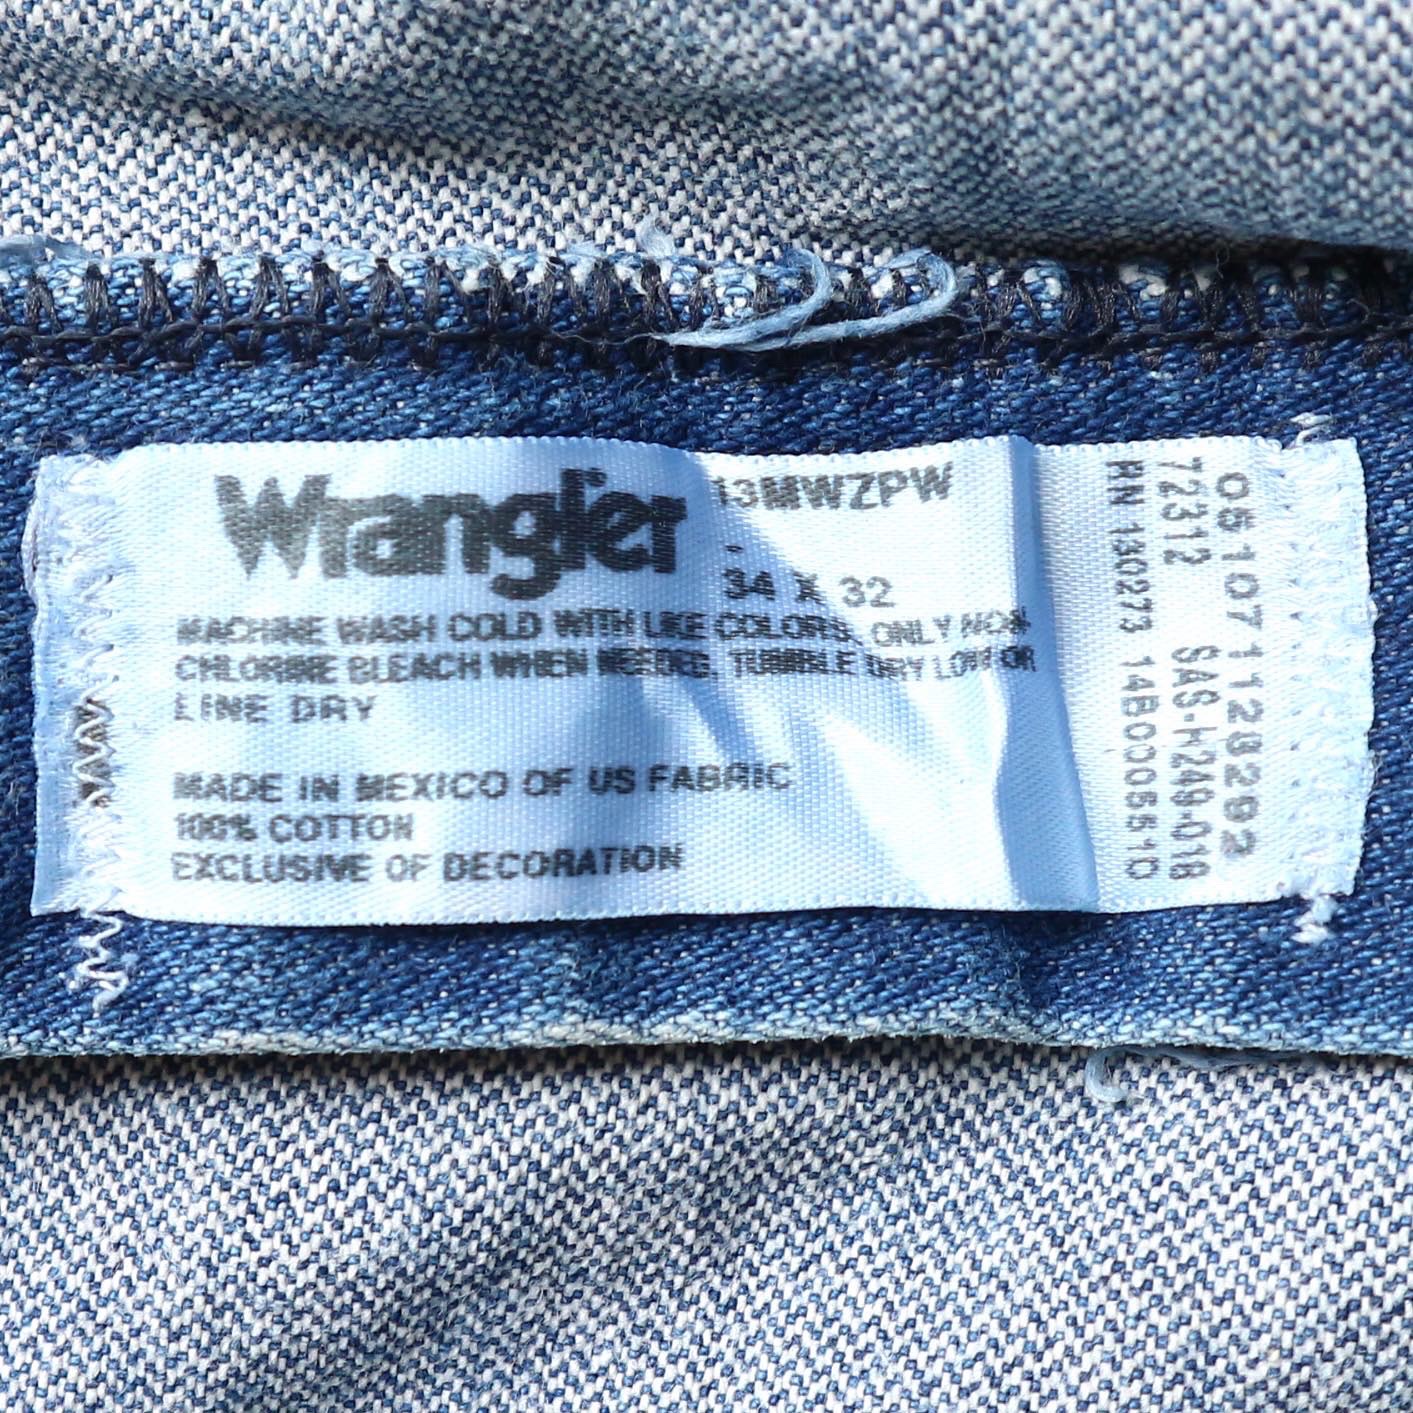 Wrangler Jeans Size 34 denimister